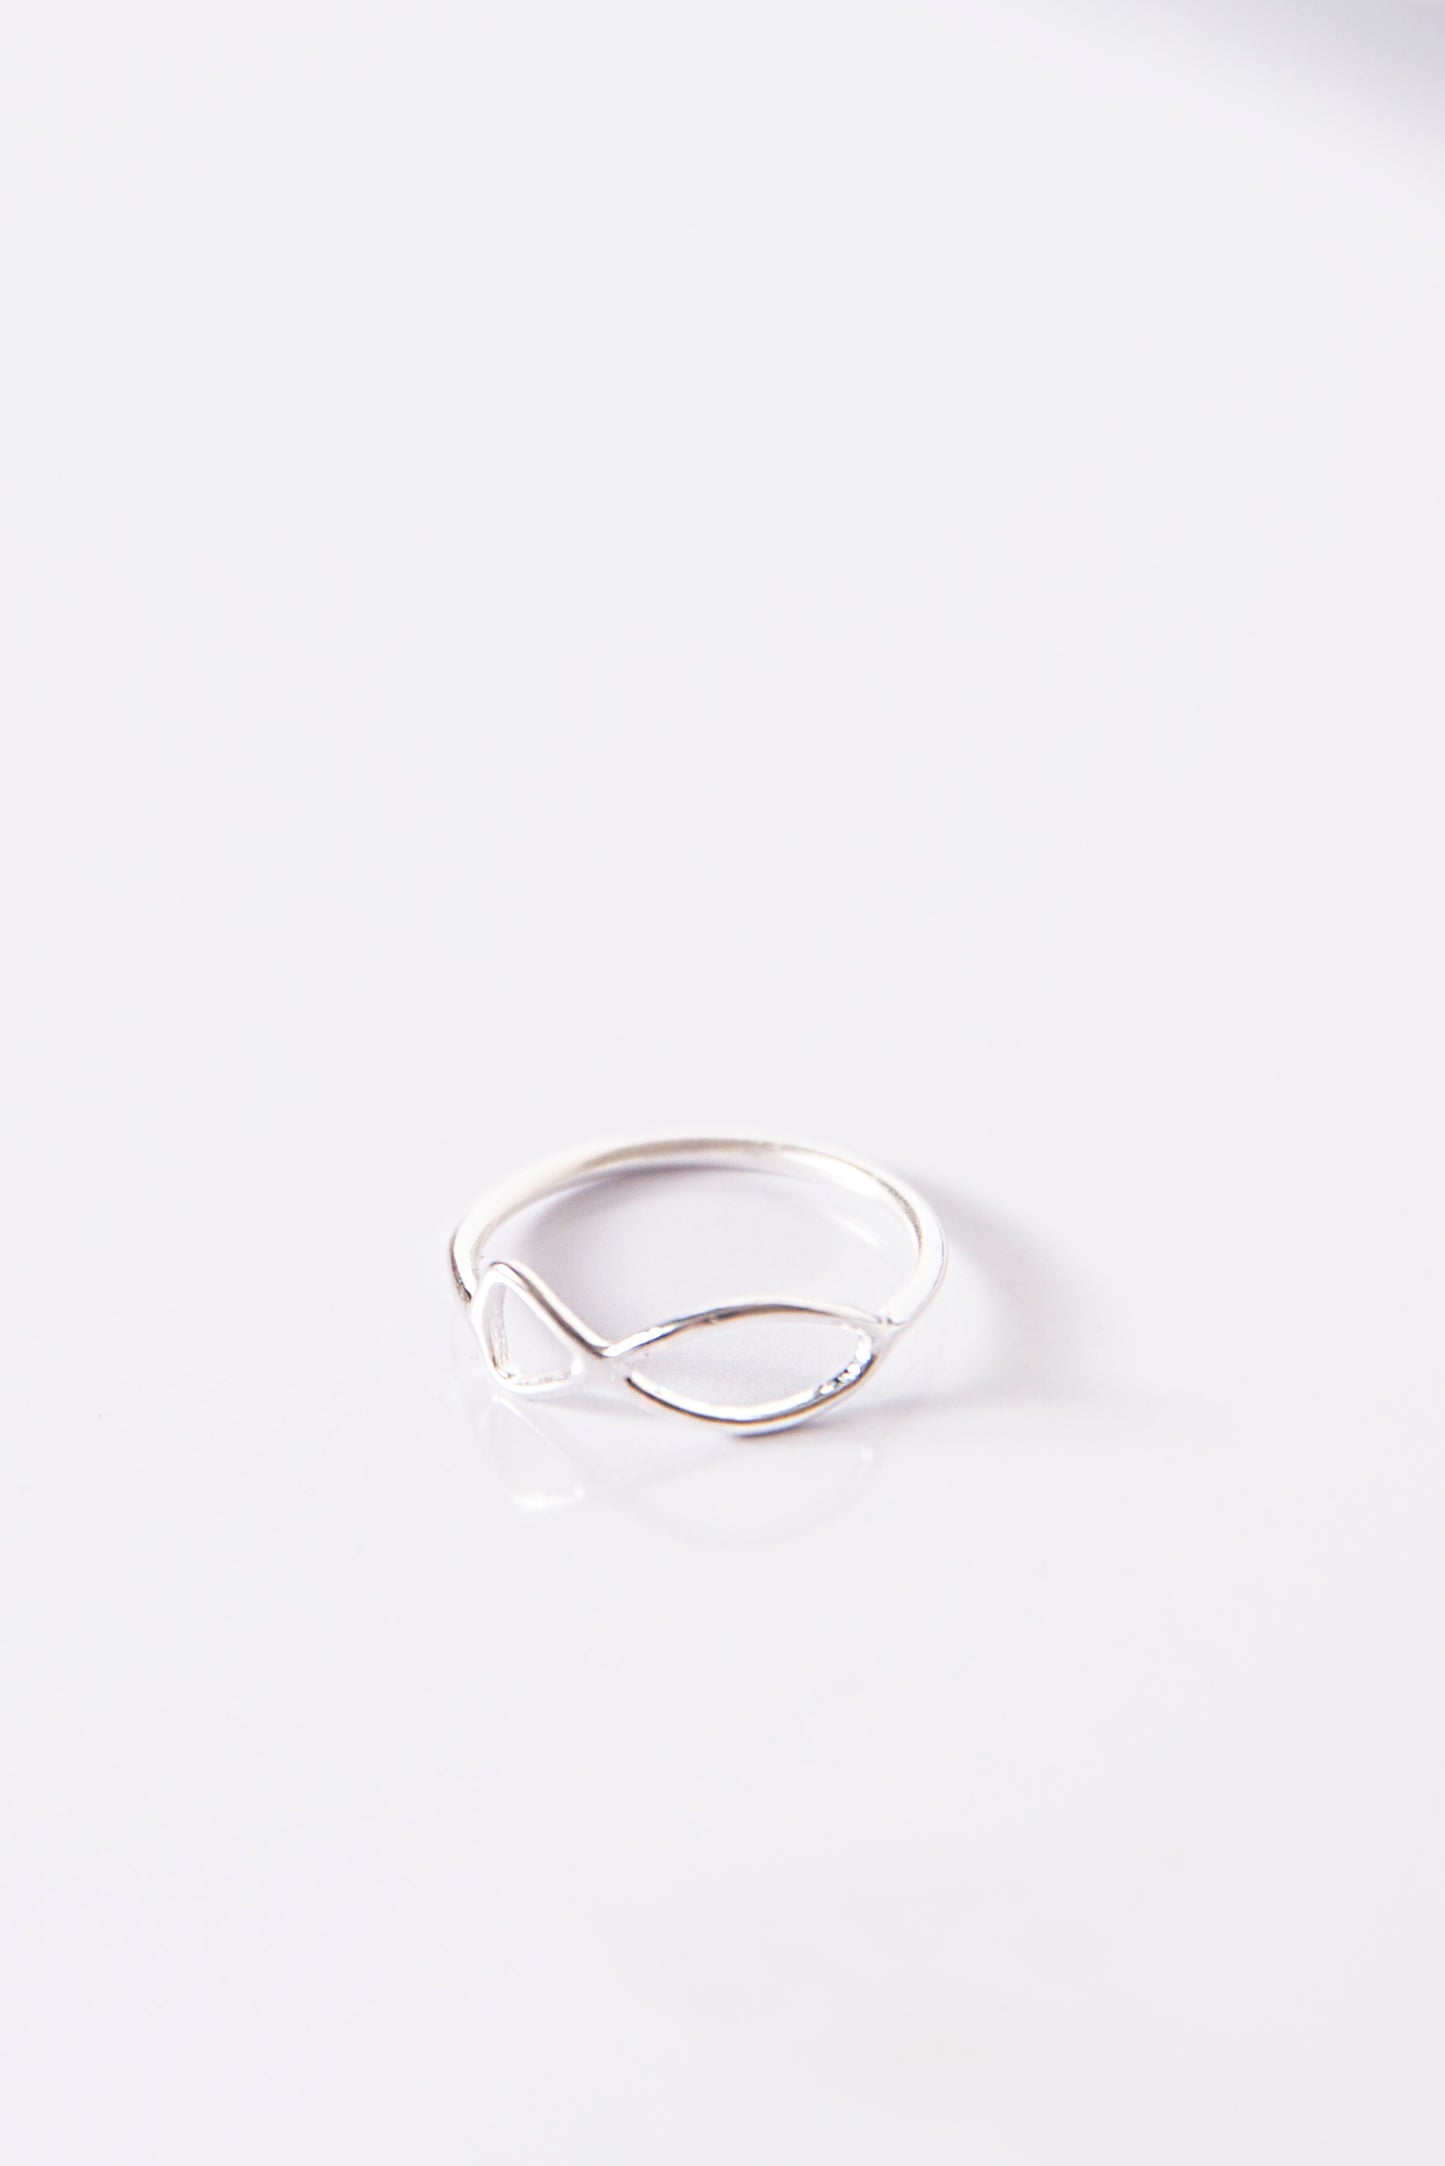 #anello #ring #argento #silver #pesce #simboli #anellisottili #idearegalo #regalodonna #amiche #friendship #gioiello #jewelery